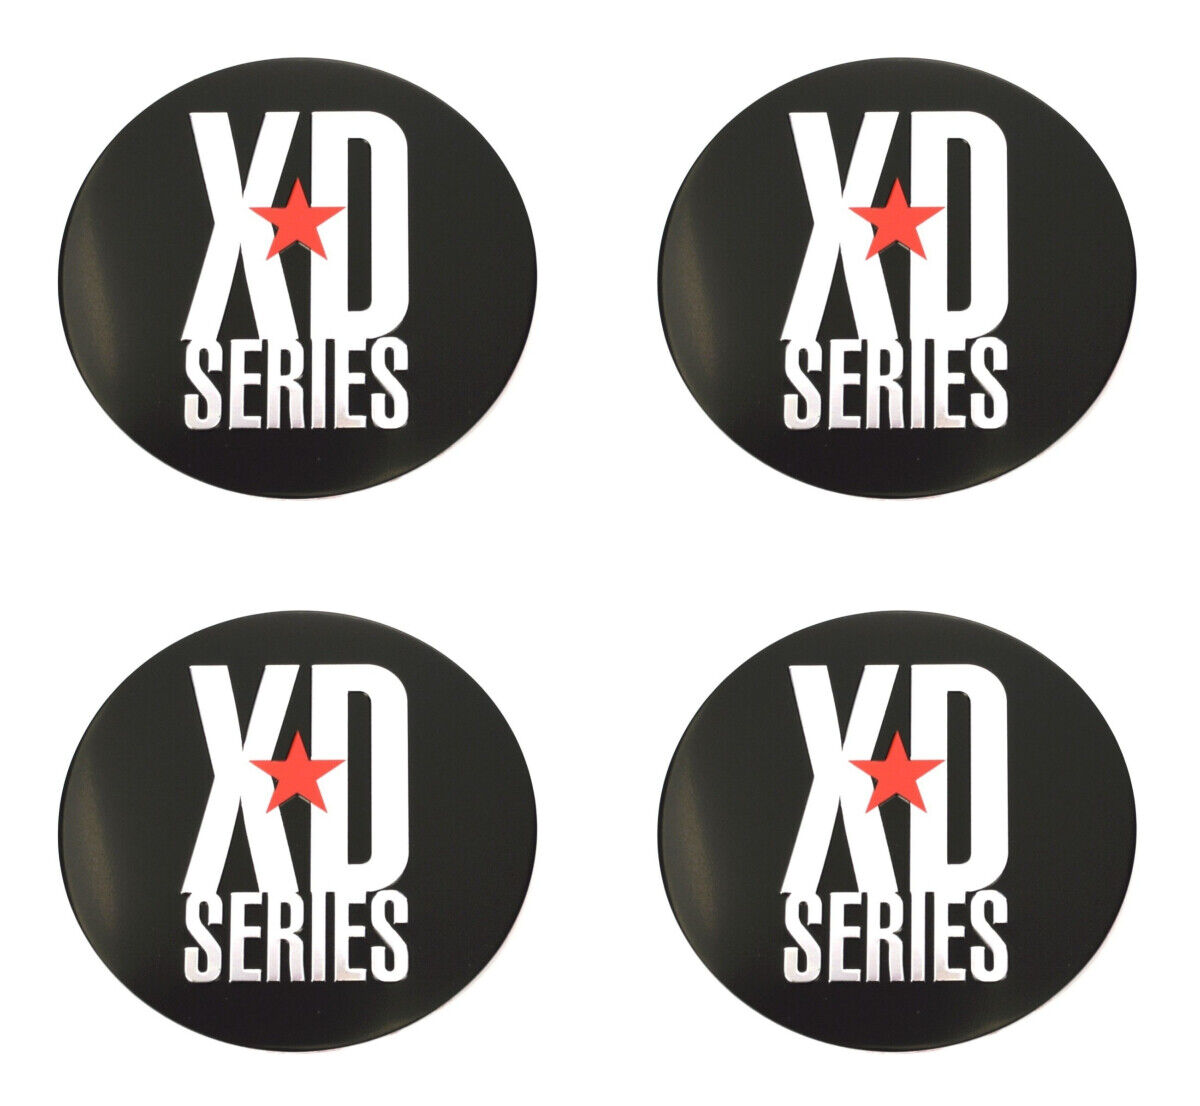 4x NEW KMC XD Series XD778 Monster 78mm Black Wheel Center Cap Emblems Logos